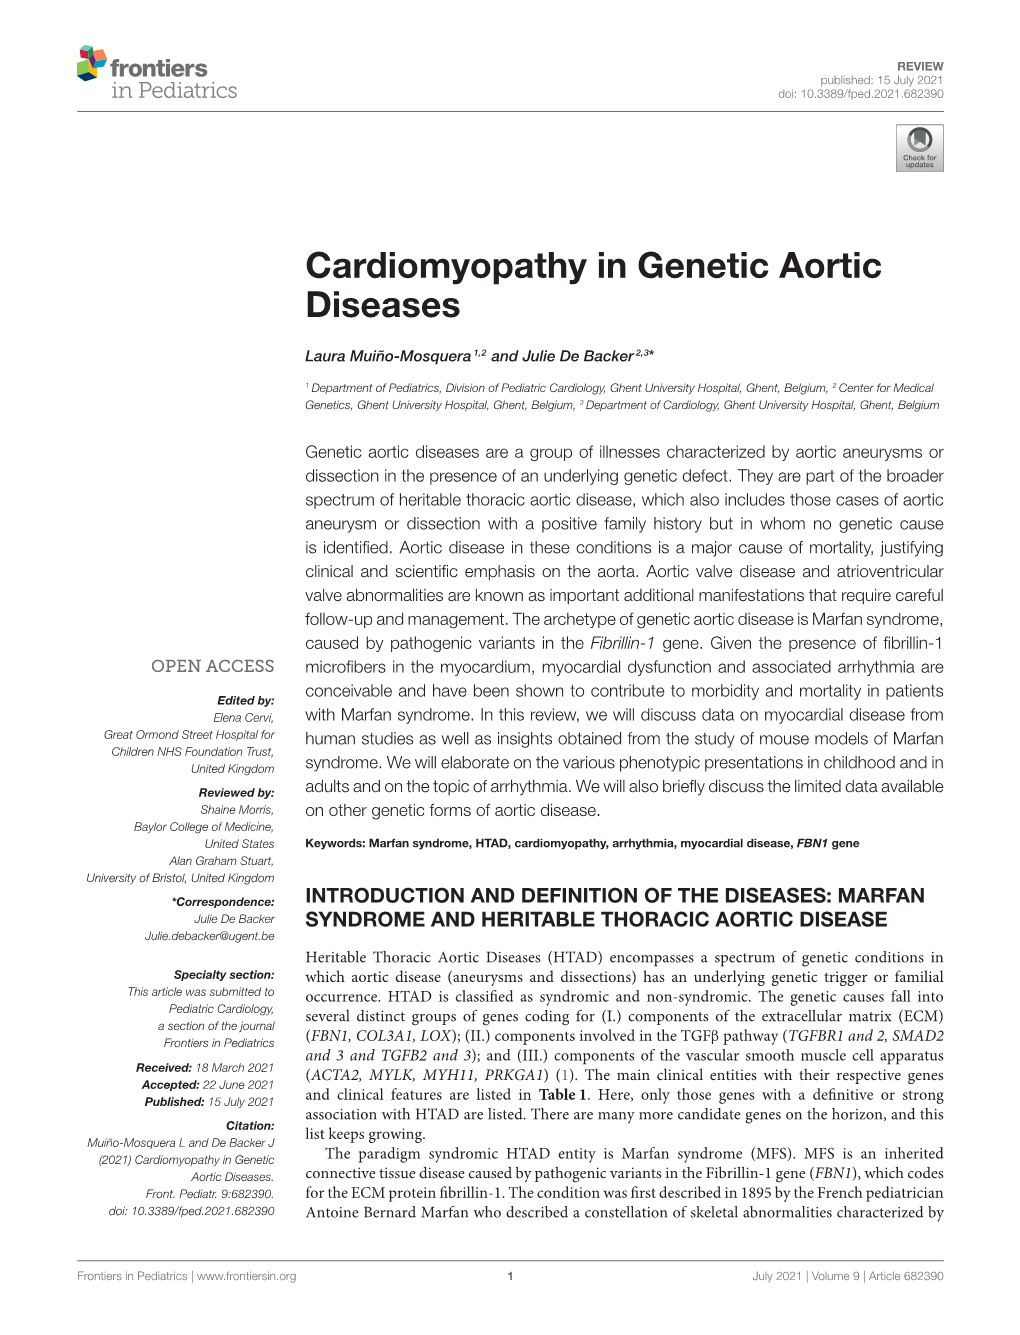 Cardiomyopathy in Genetic Aortic Diseases